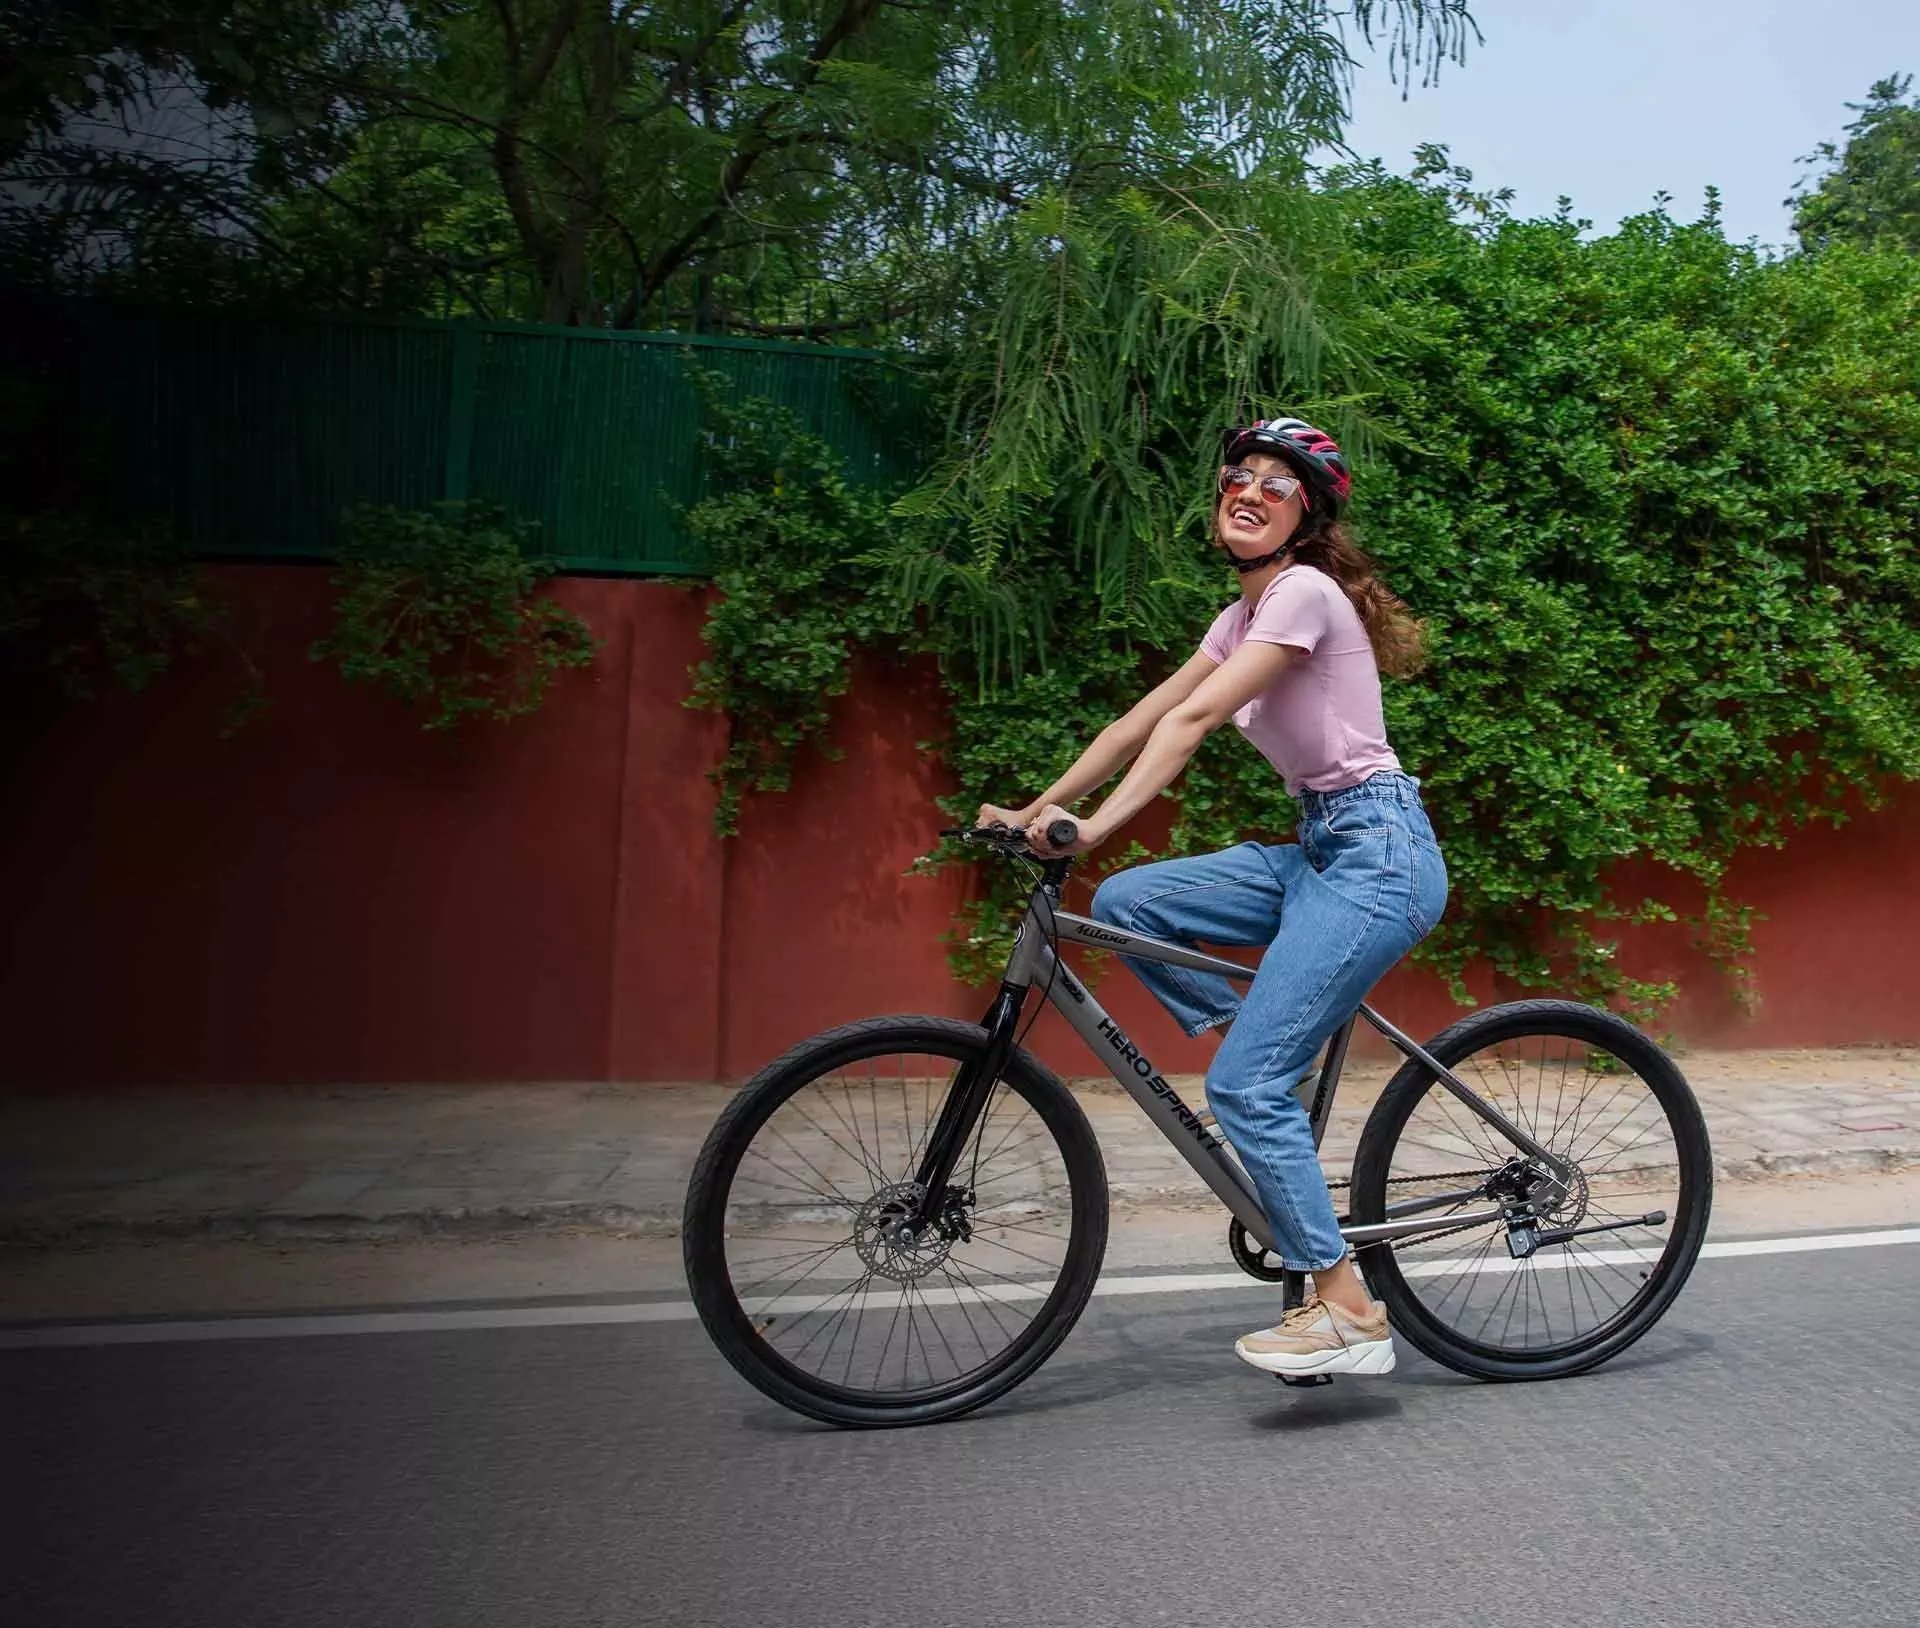 हिंदी में Bicycle को क्या कहते हैं, 99% लोग हुए बताने में फैल, क्या आप जानते हैं?